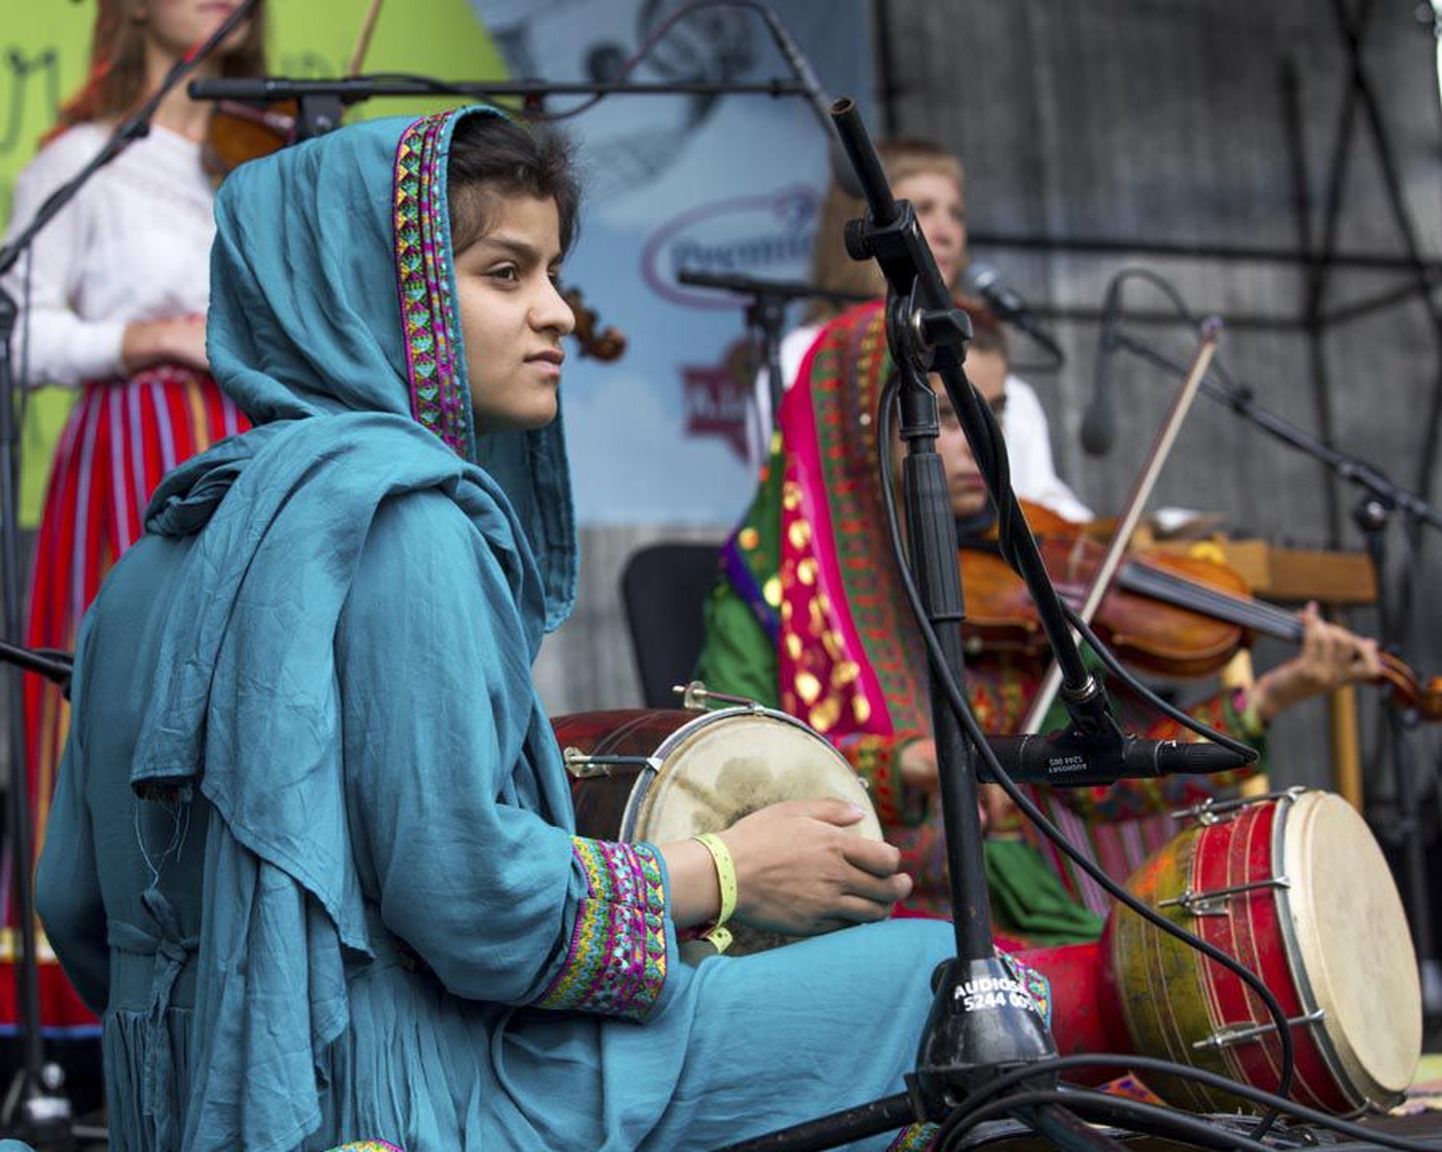 Afgaani tüdrukuteansambel Dasta-e-Azada on pärit maalt, kus muusika oli keelatud ja mis on üle elanud ühe sõja teise järel. Neile lastele on muusika omamoodi teraapia ja võimalus mineviku veristest varjudest hoolimata edasi elada. Viljandis esinesid nad kodumaa tütarlastekooli toetuseks.